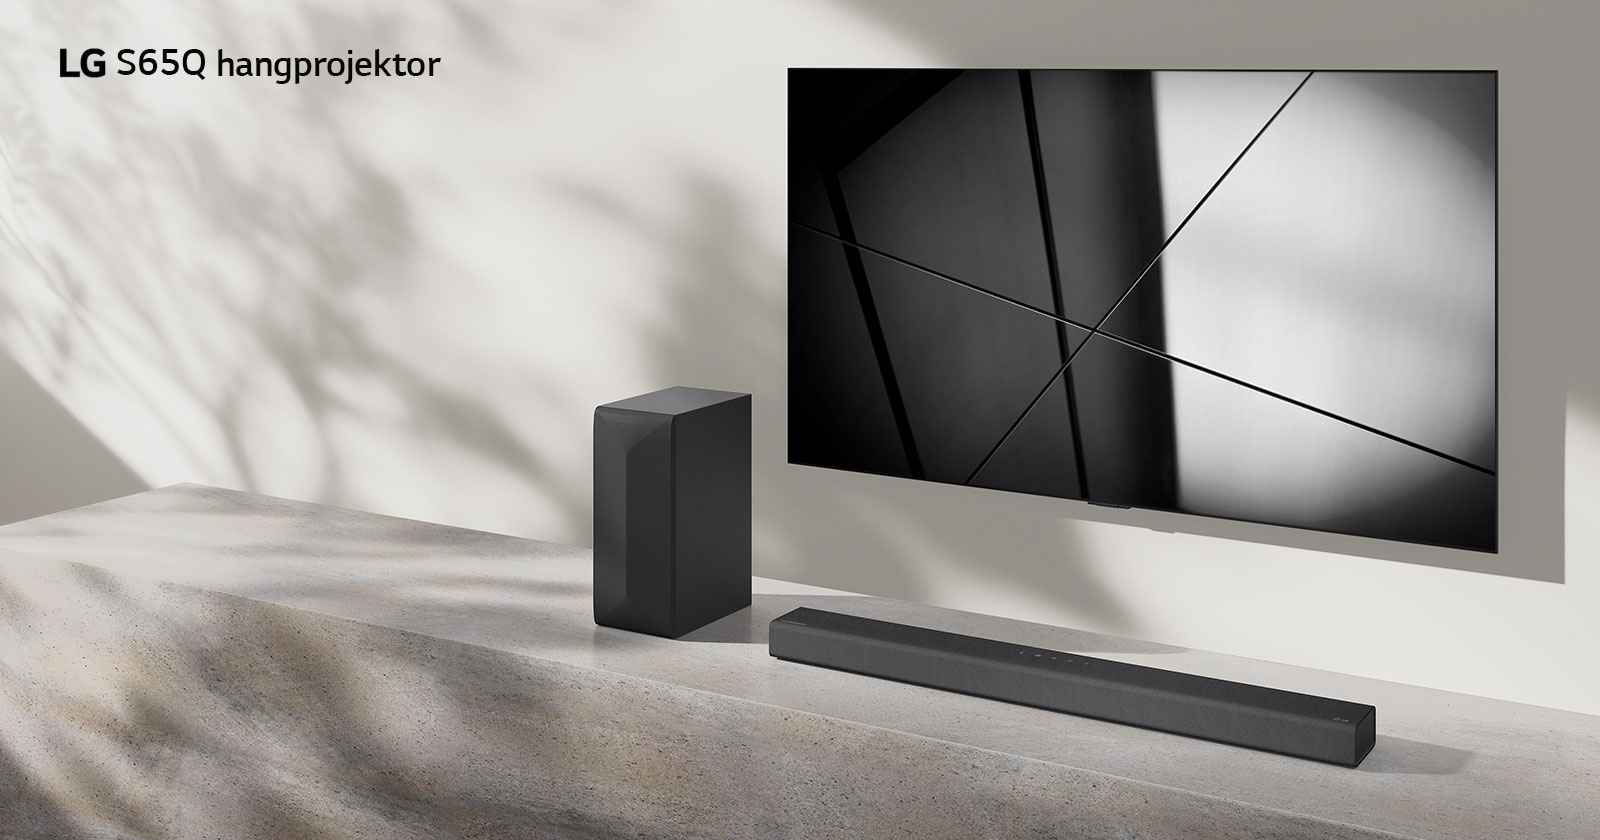 LG S65Q hangprojektor és LG TV együtt elhelyezve egy nappaliban. A TV be van kapcsolva, és egy fekete-fehér kép látható rajta.